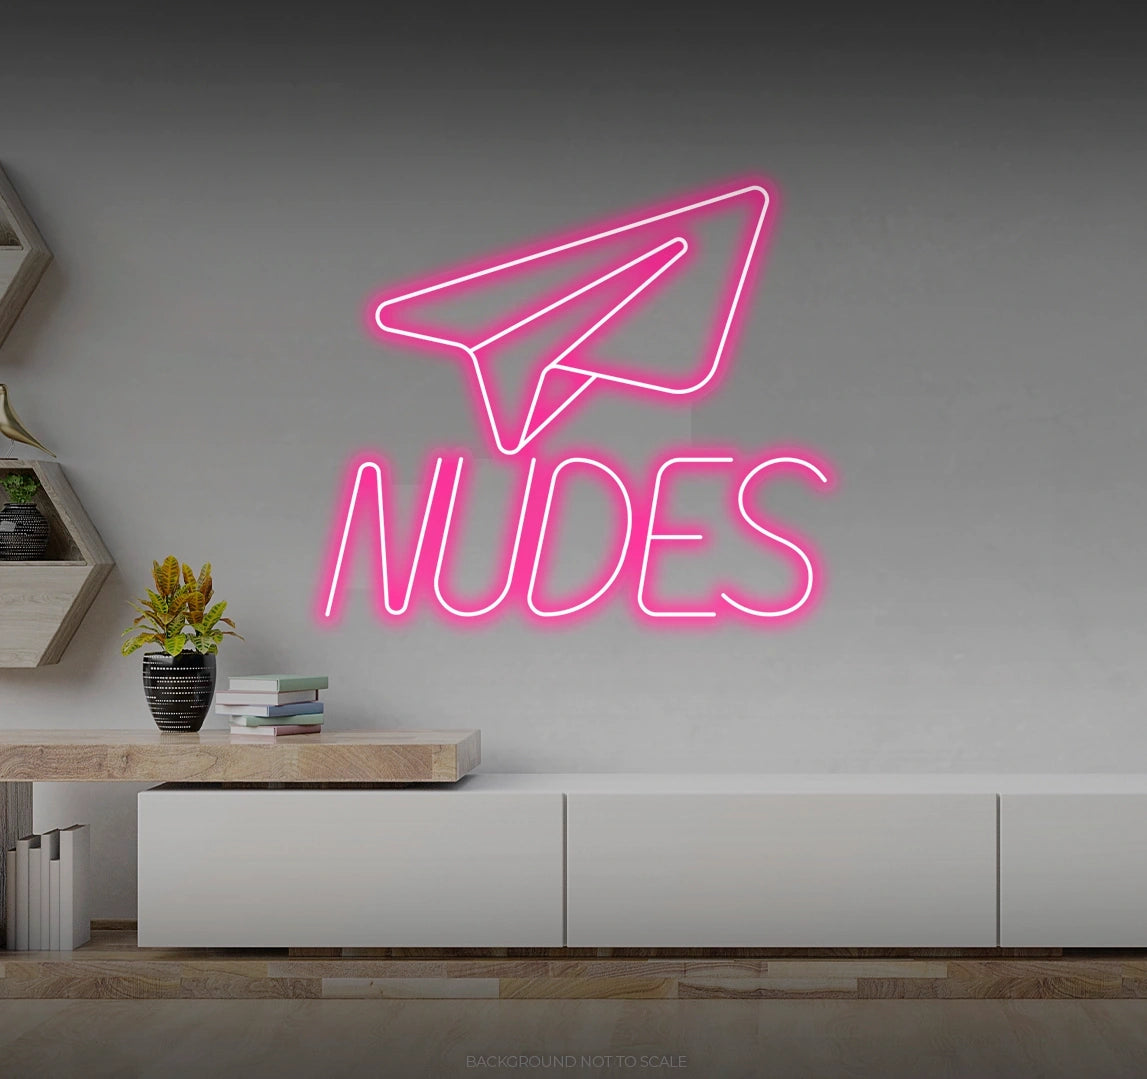 Send nudes paper plane LED neon